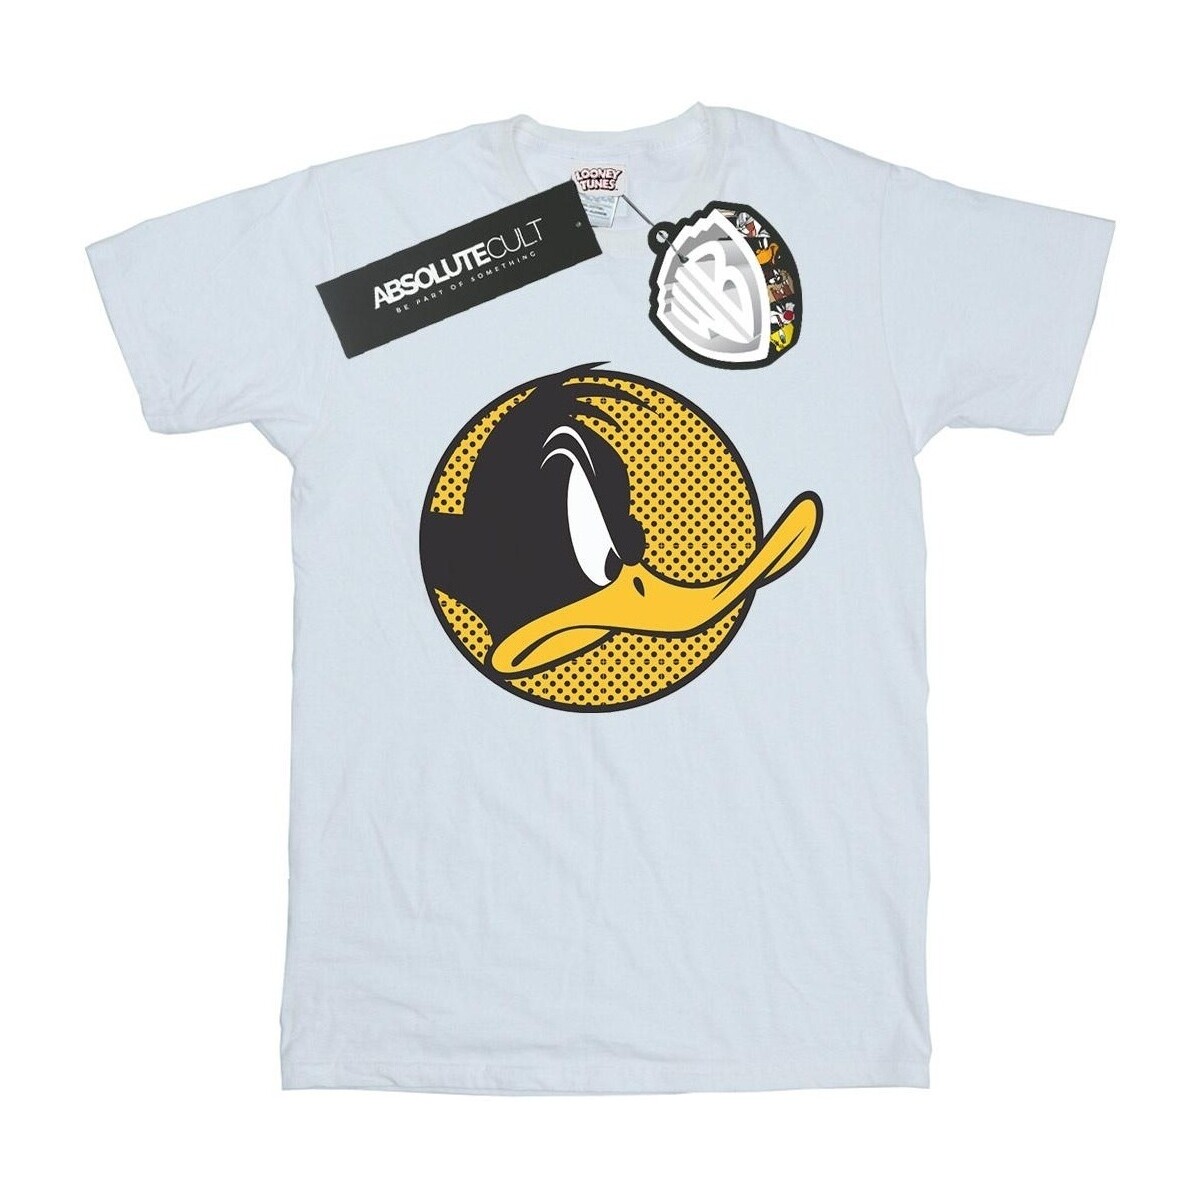 Abbigliamento Bambino T-shirt maniche corte Dessins Animés Daffy Duck Dotted Profile Bianco